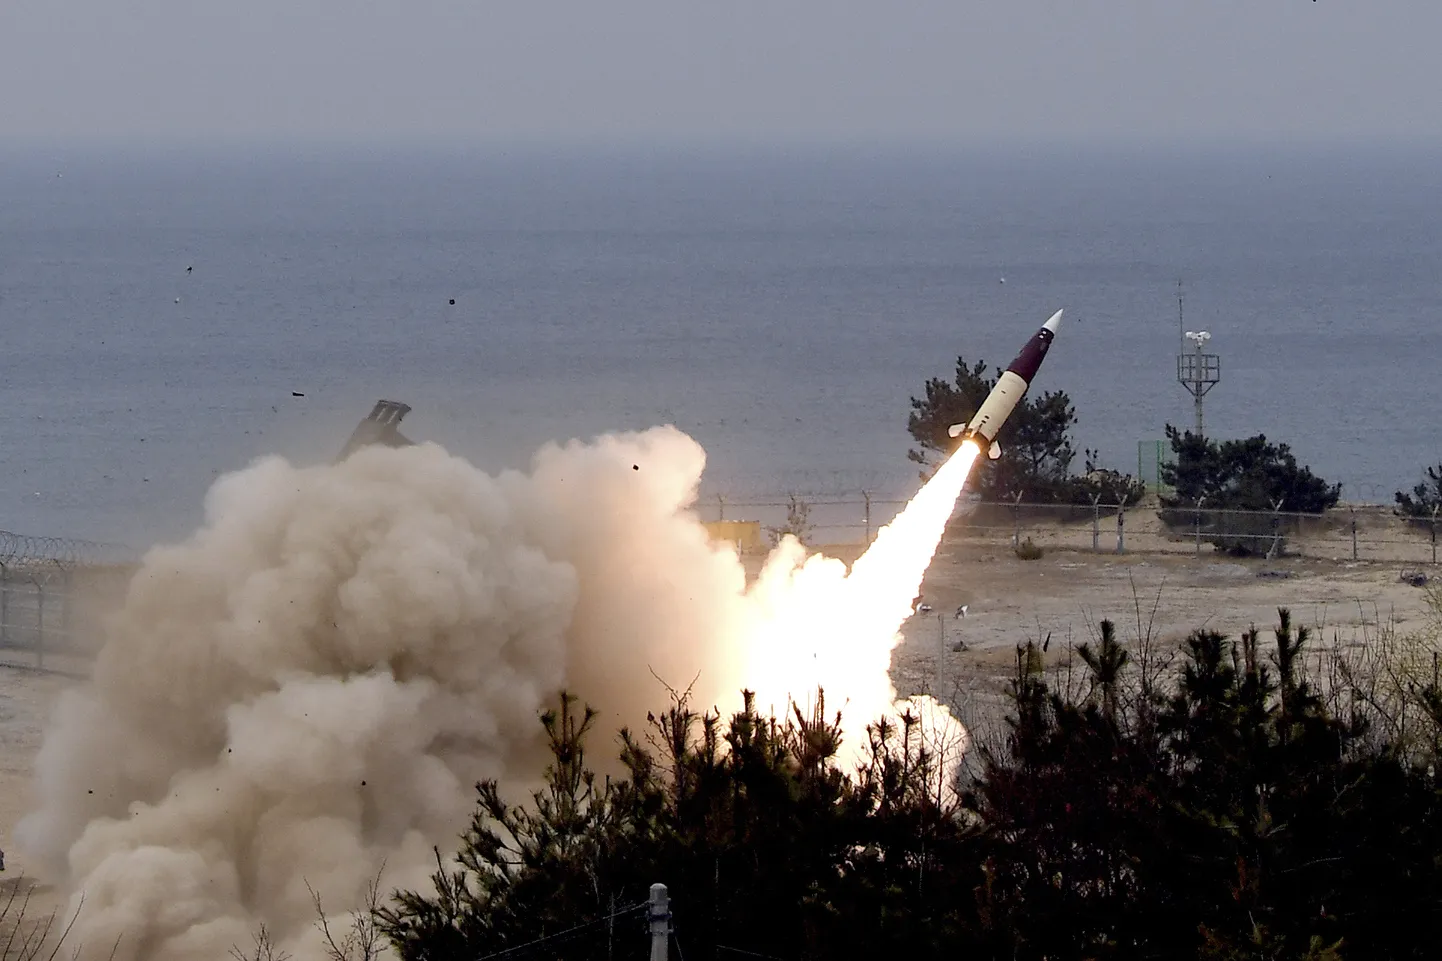 Lõuna-Korea armee tulistab mullu õppusel välja ATACMSi raketi. Väidetavalt kaalub Ukraina rakettide hankimist teistelt riikidelt peale USA.